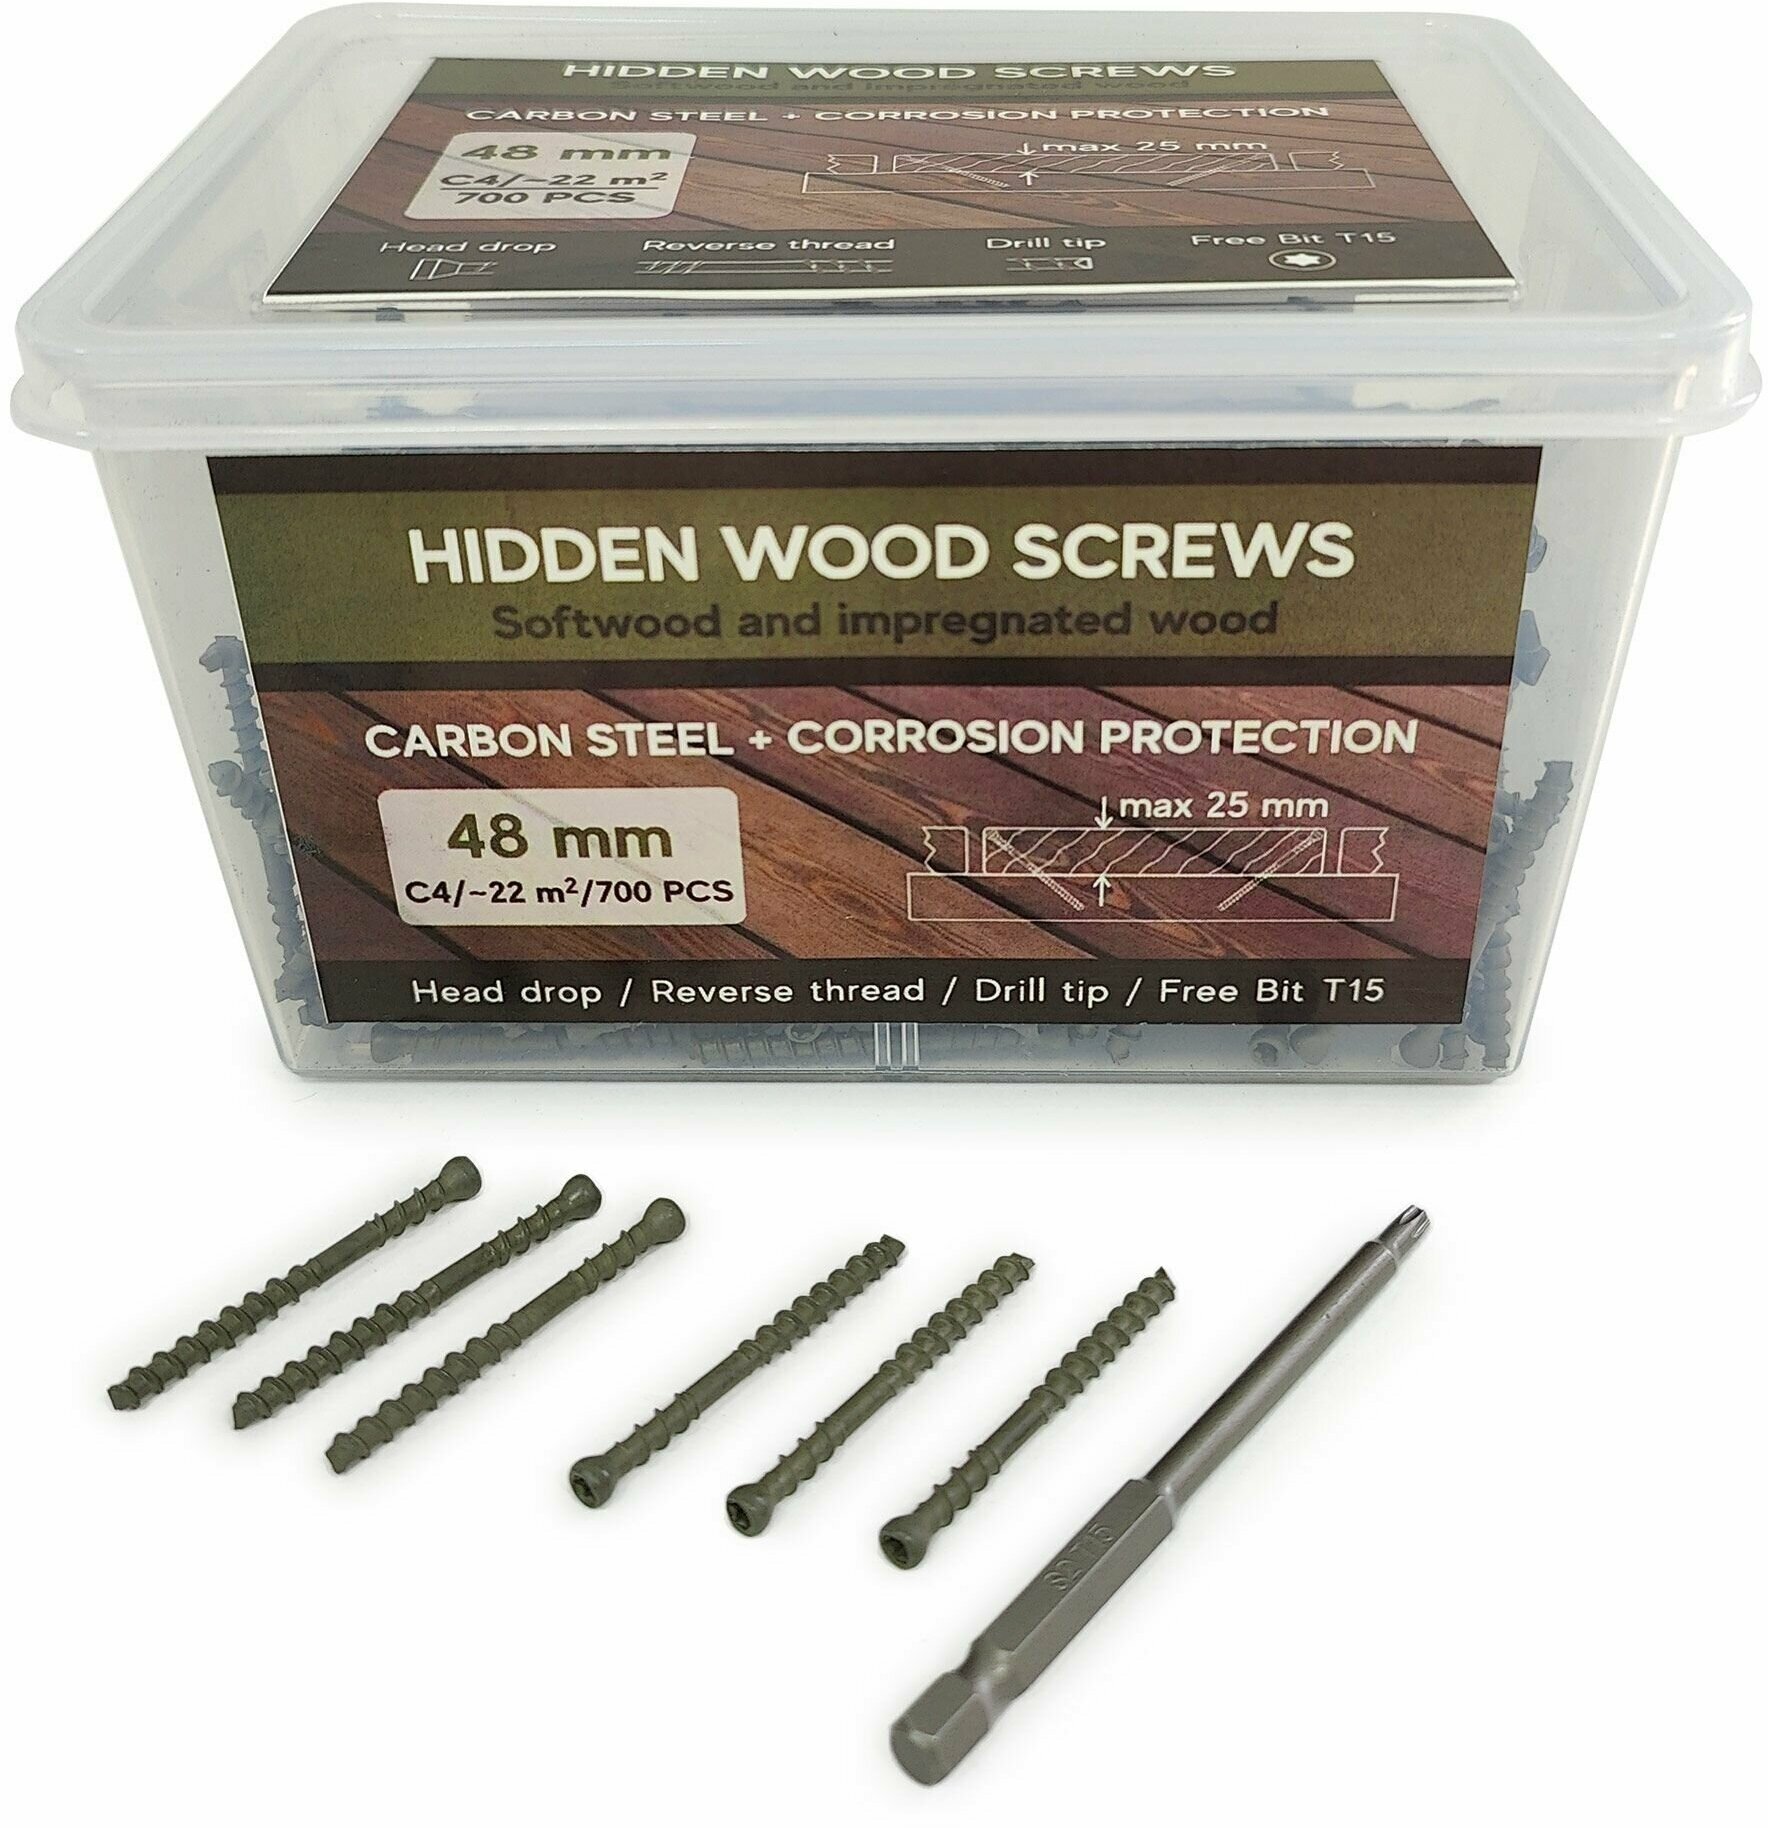 Саморезы Hidden Wood Screws C4 48 mm 700 шт, для скрытого крепежа террасной доски — купить в интернет-магазине по низкой цене на Яндекс Маркете